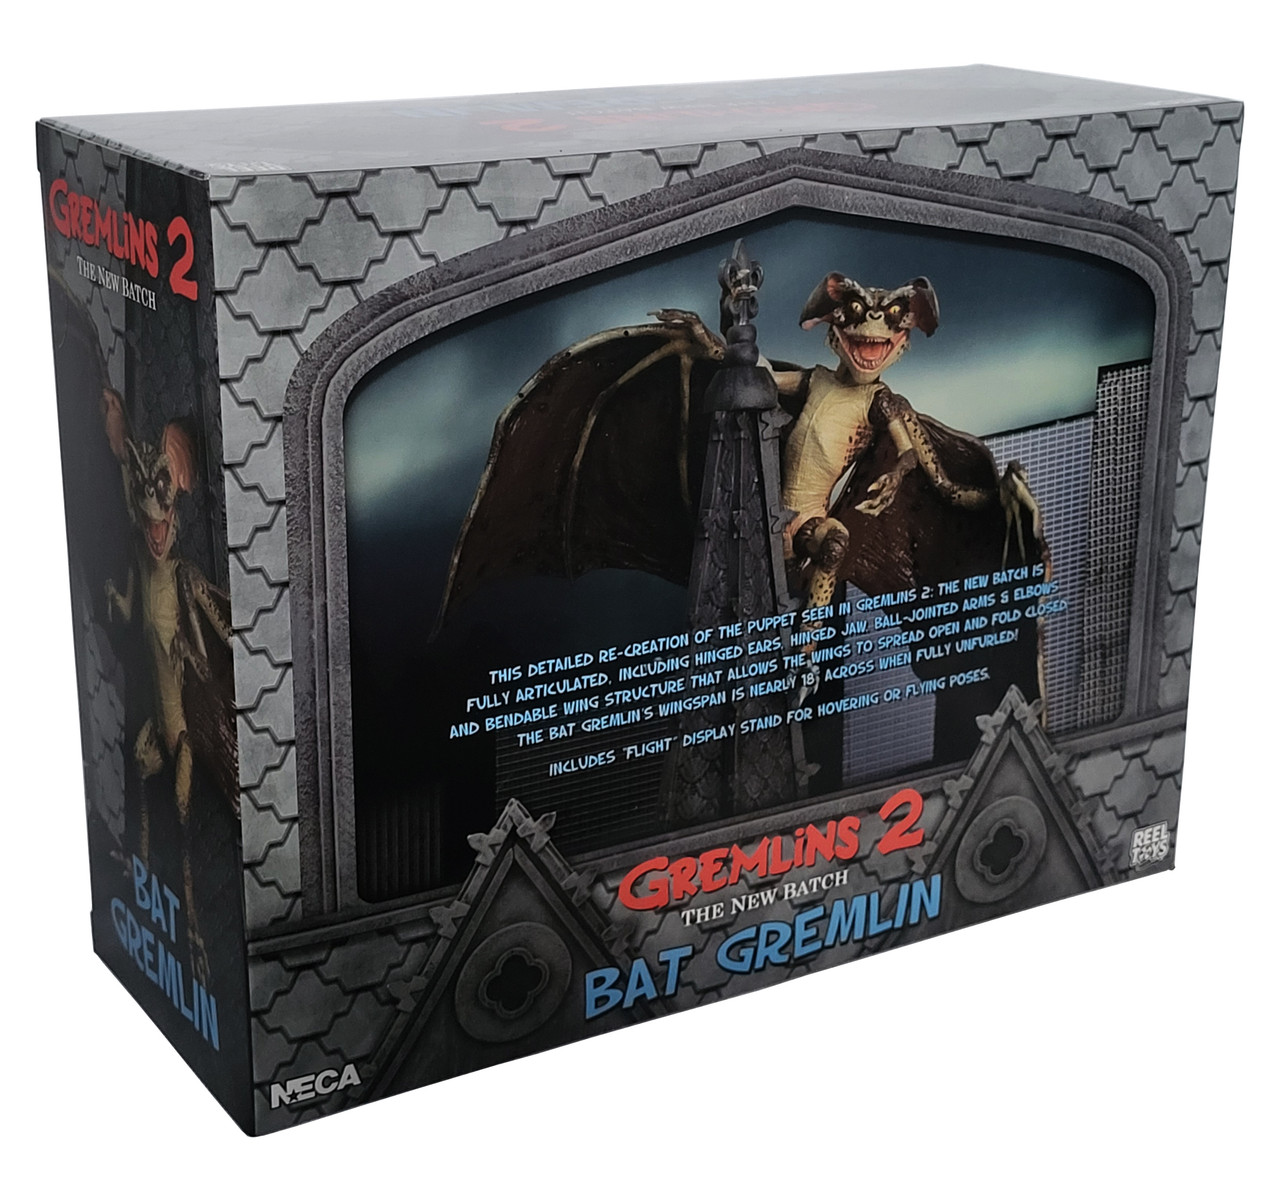 NECA Bat Gremlin Deluxe Action Figure